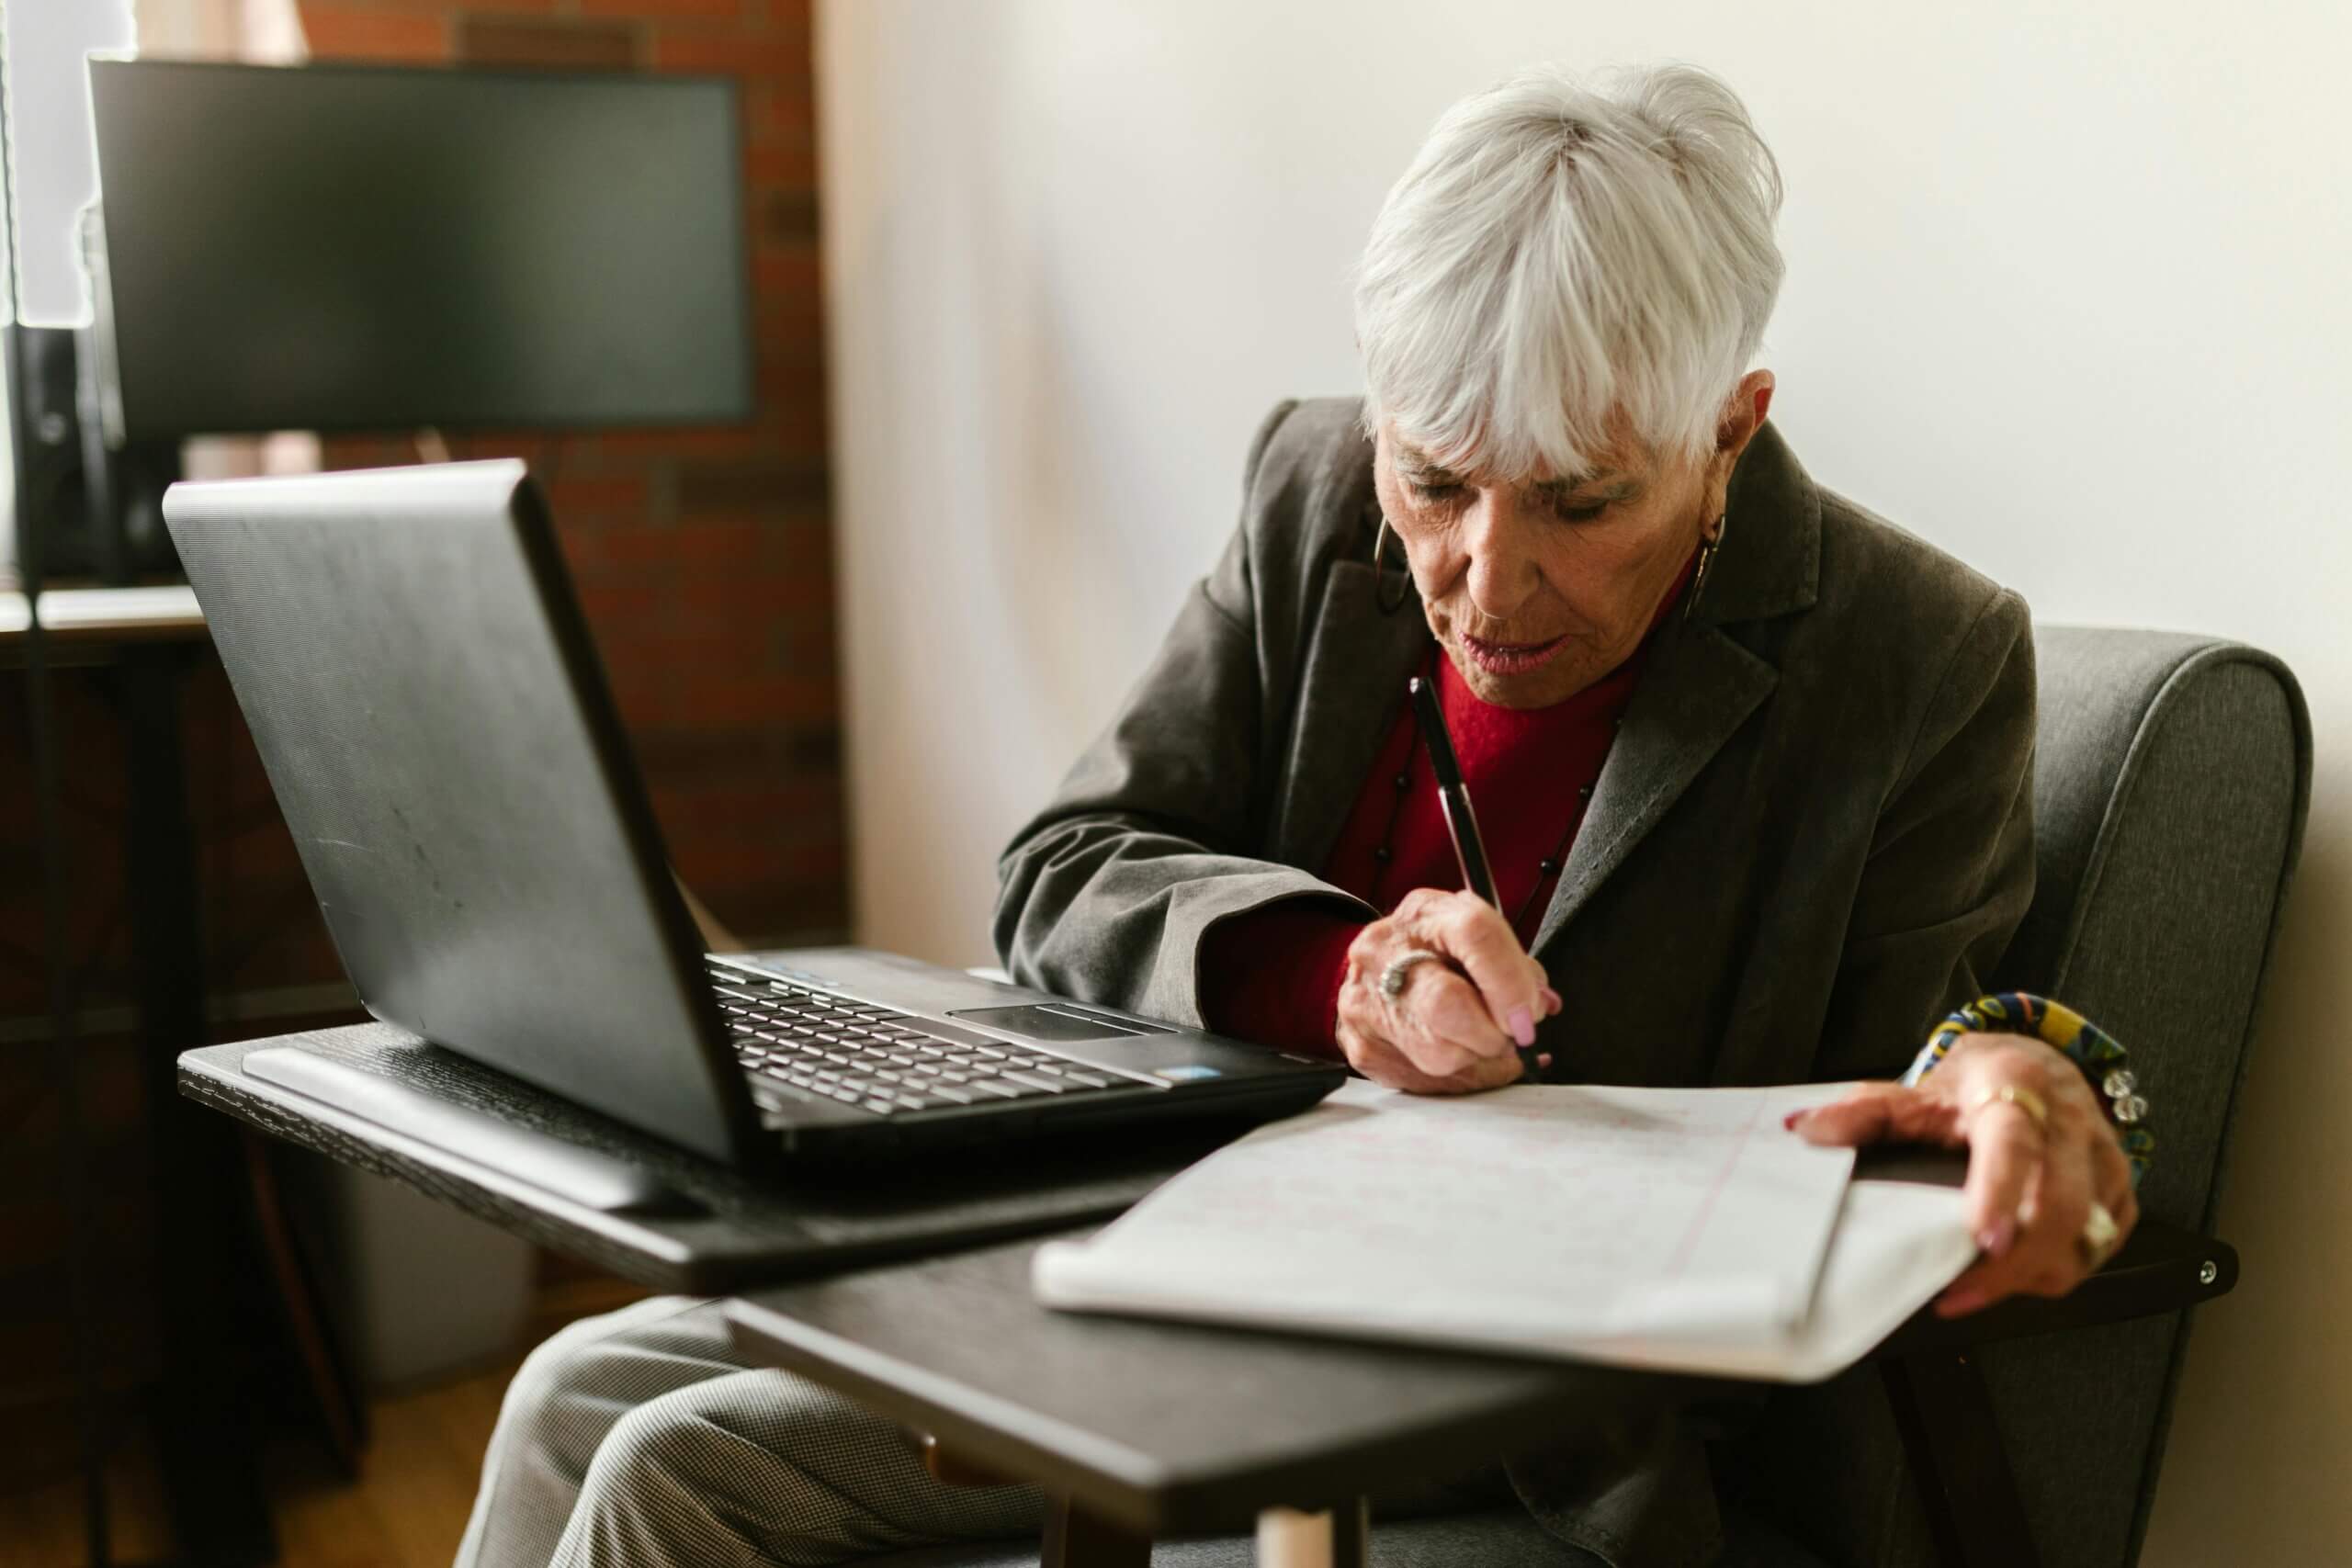 Starija ženska osoba sjedi za stolom uz laptop i papire